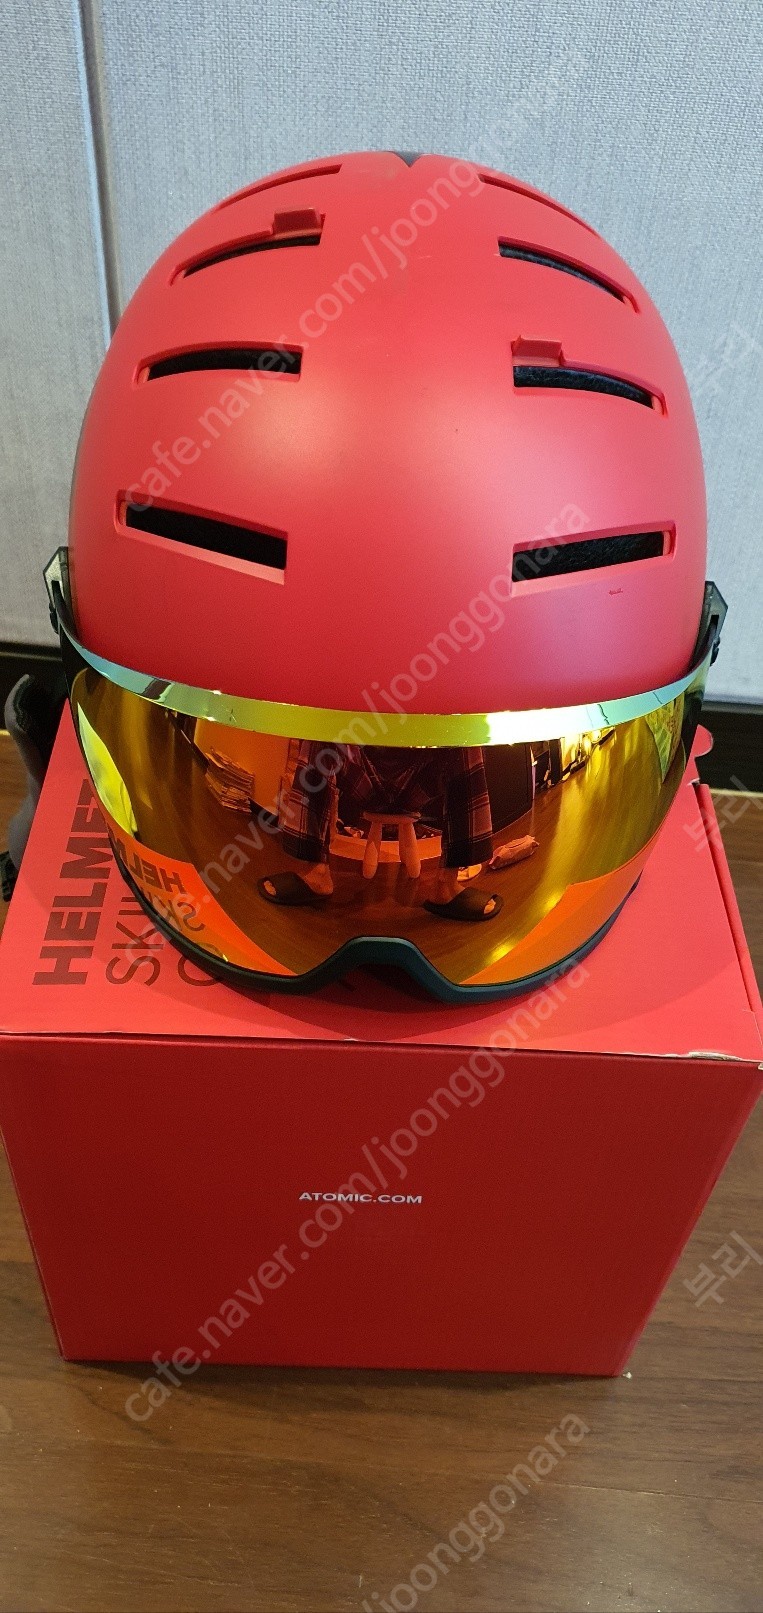 상급 아토믹 빨간색 AIMD HD렌즈 바이져 스키헬멧 판매합니다